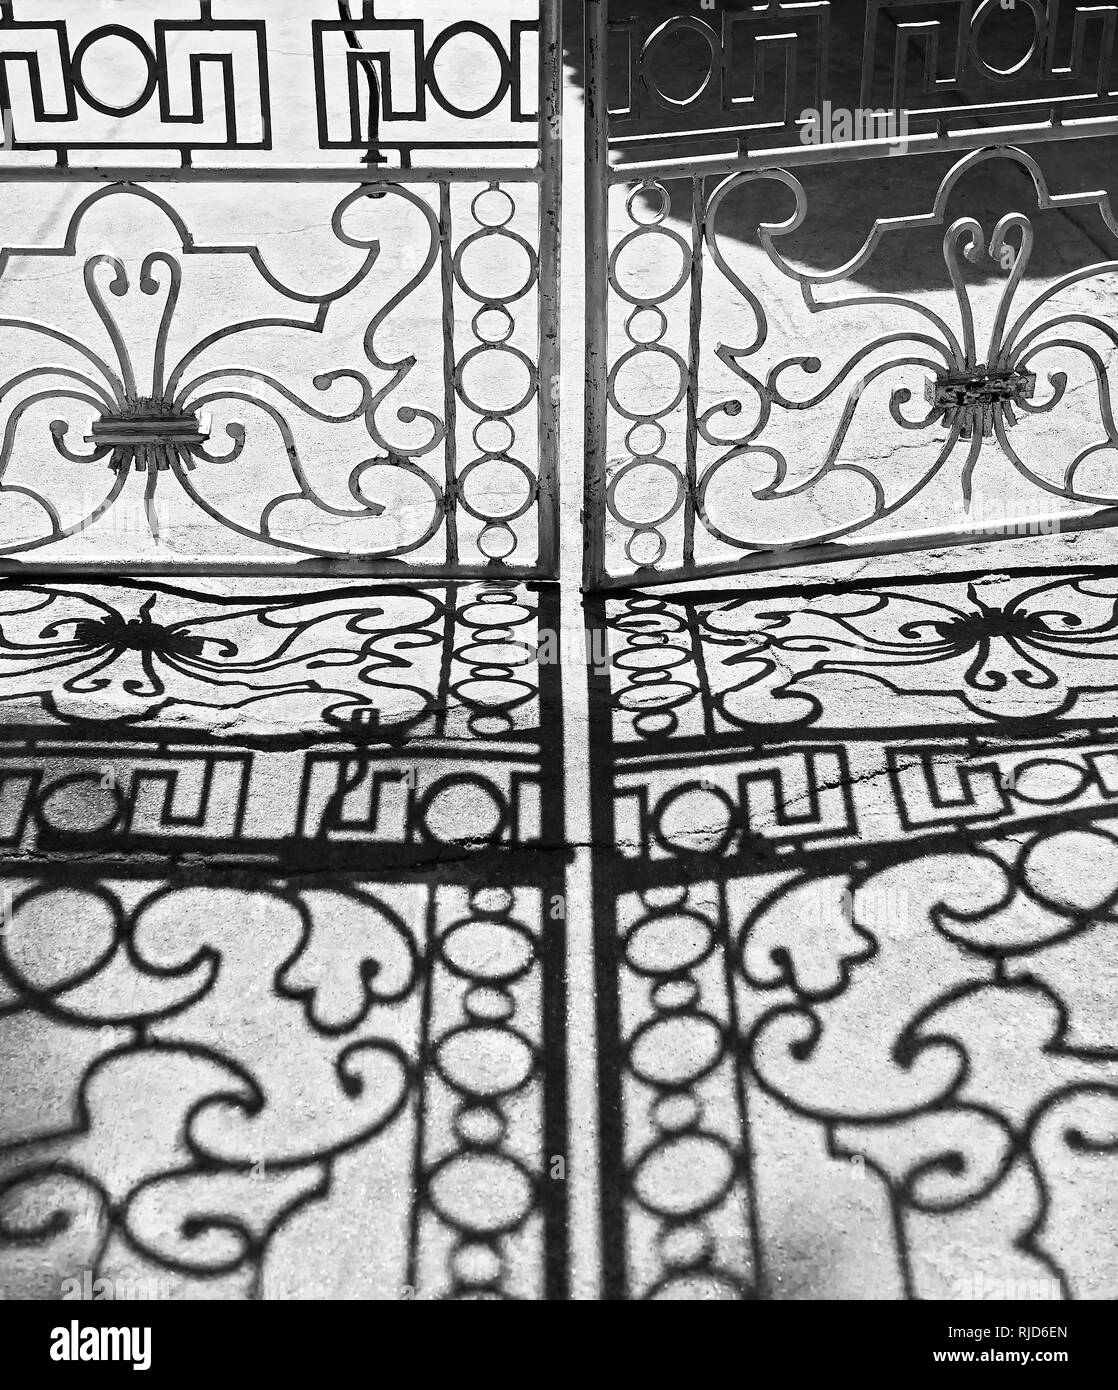 Fer fermé conçu porte donnant des ombres sur un sol gris, vu en cuyo Ville, aux Philippines. La photo est en noir et blanc. Banque D'Images